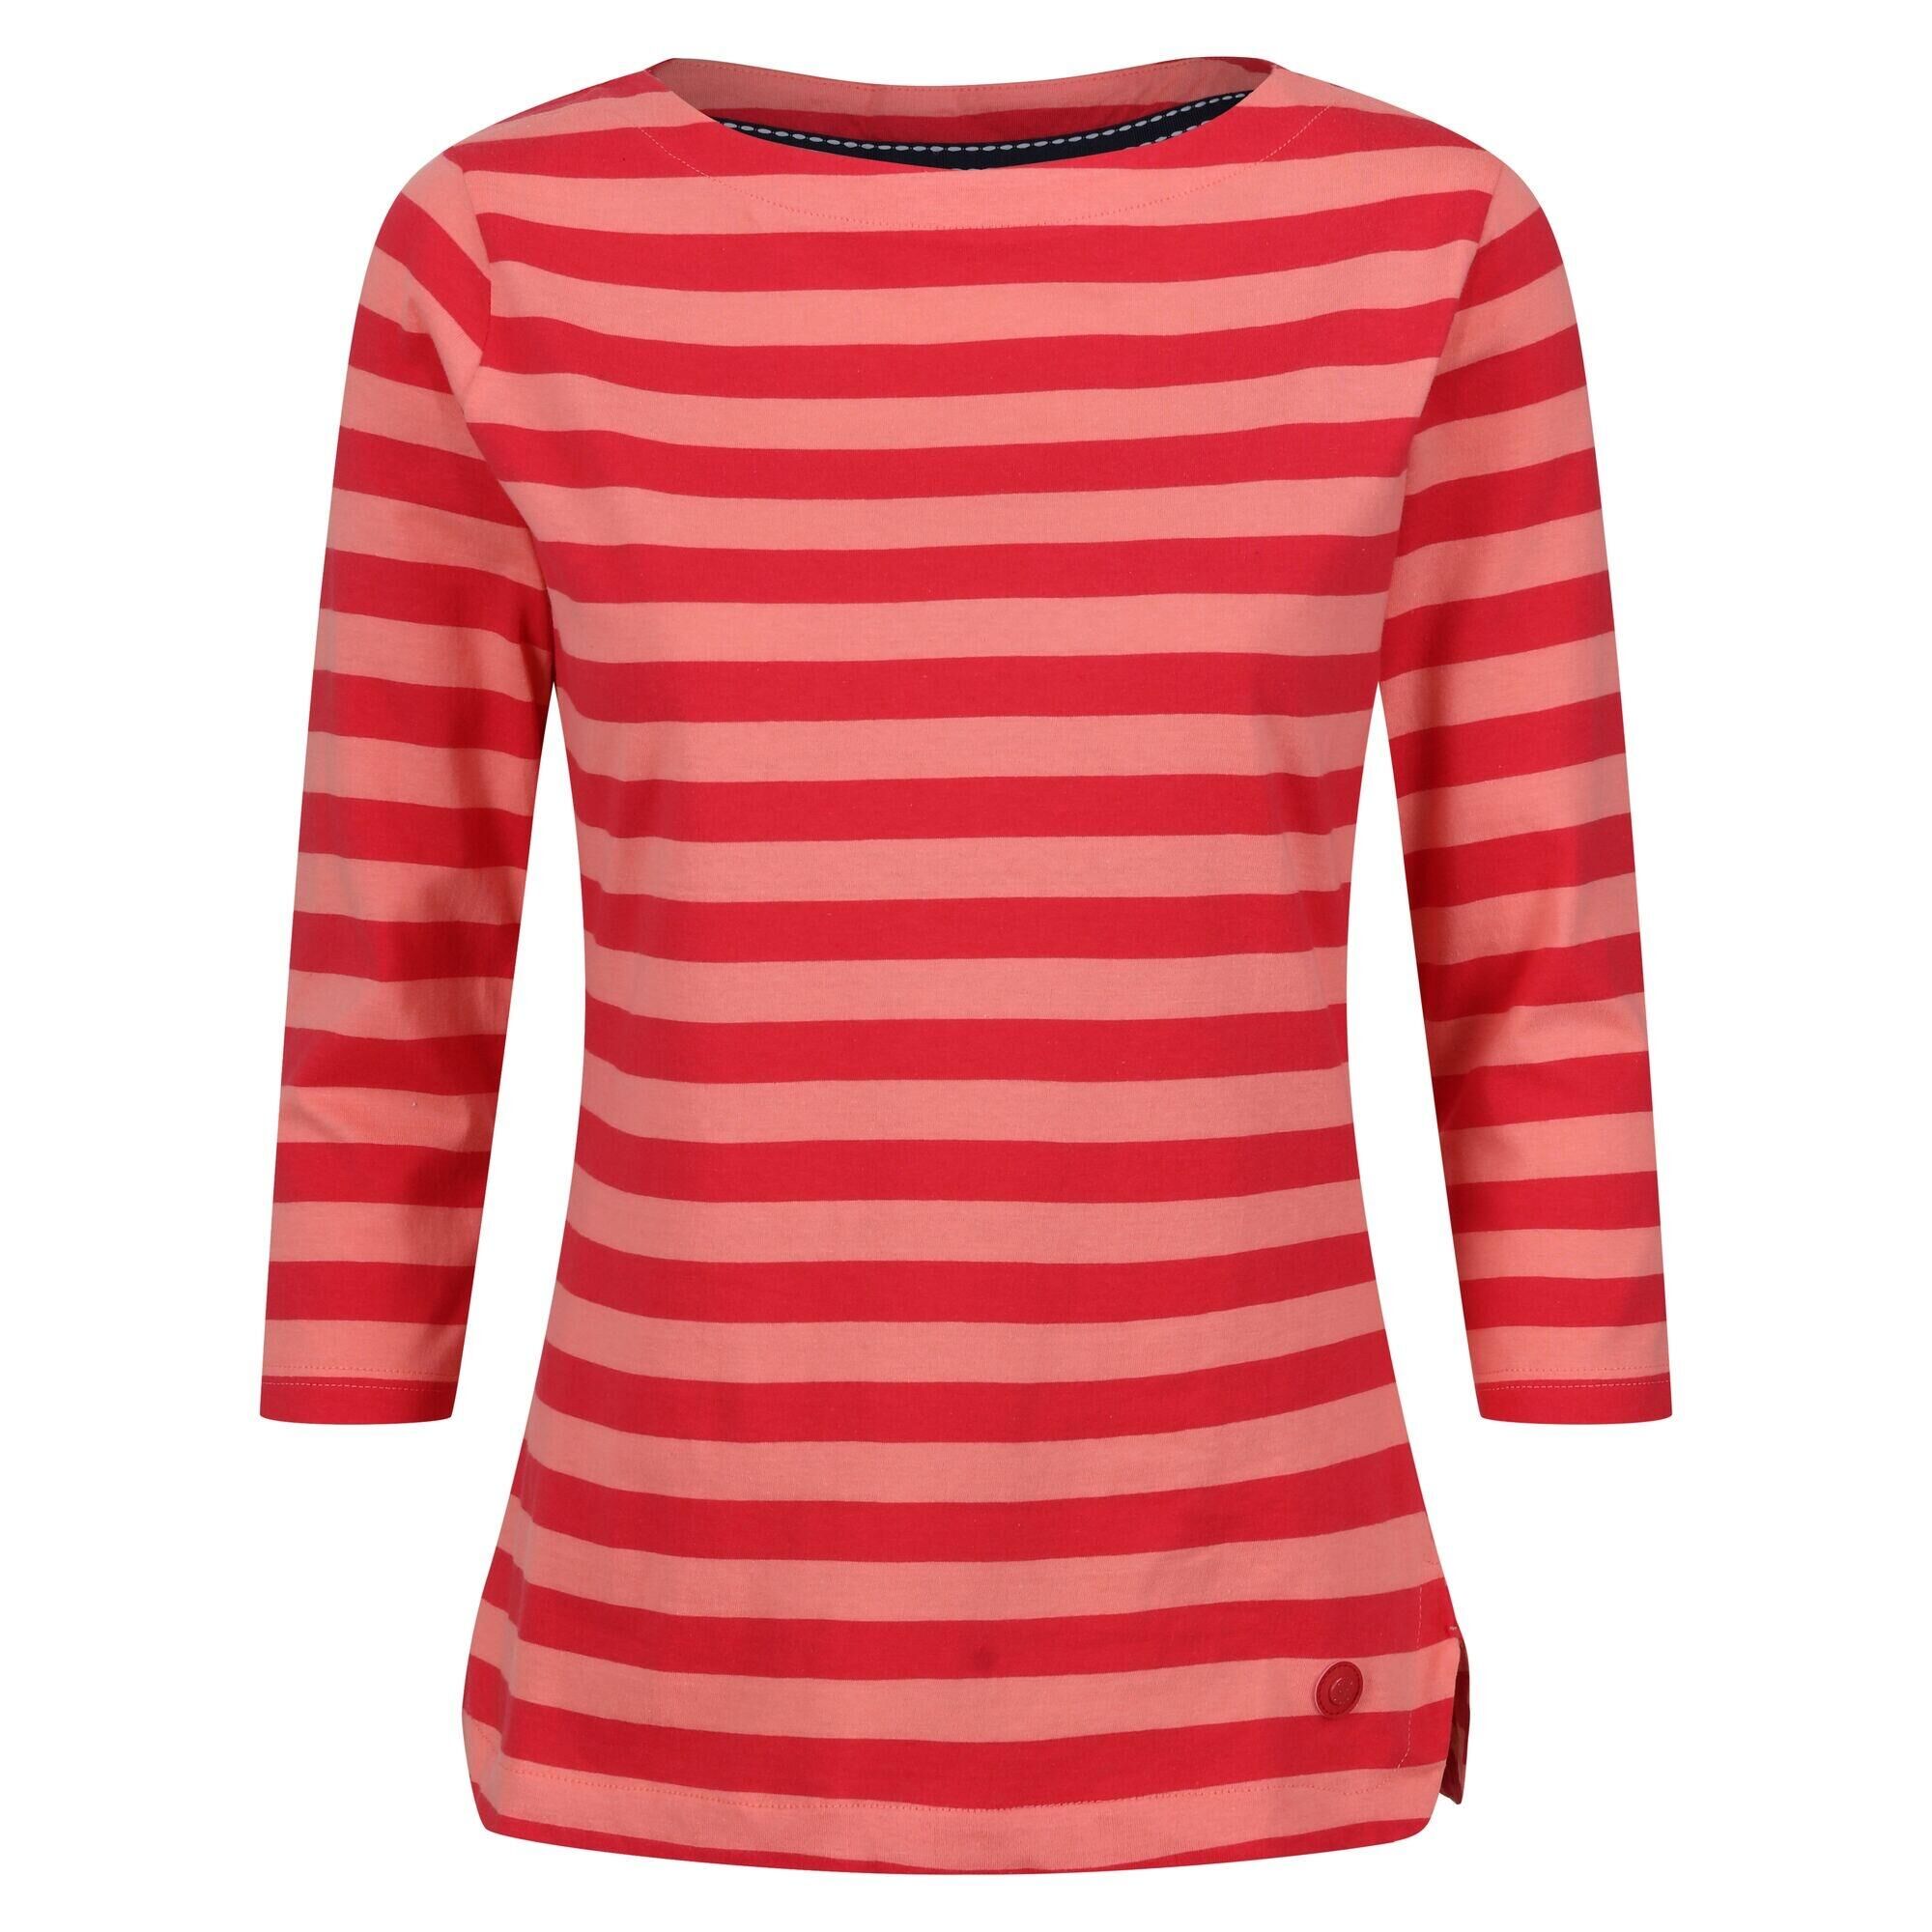 REGATTA Womens/Ladies Bayla 3/4 Sleeve TShirt (Shell Pink/Miami Red)